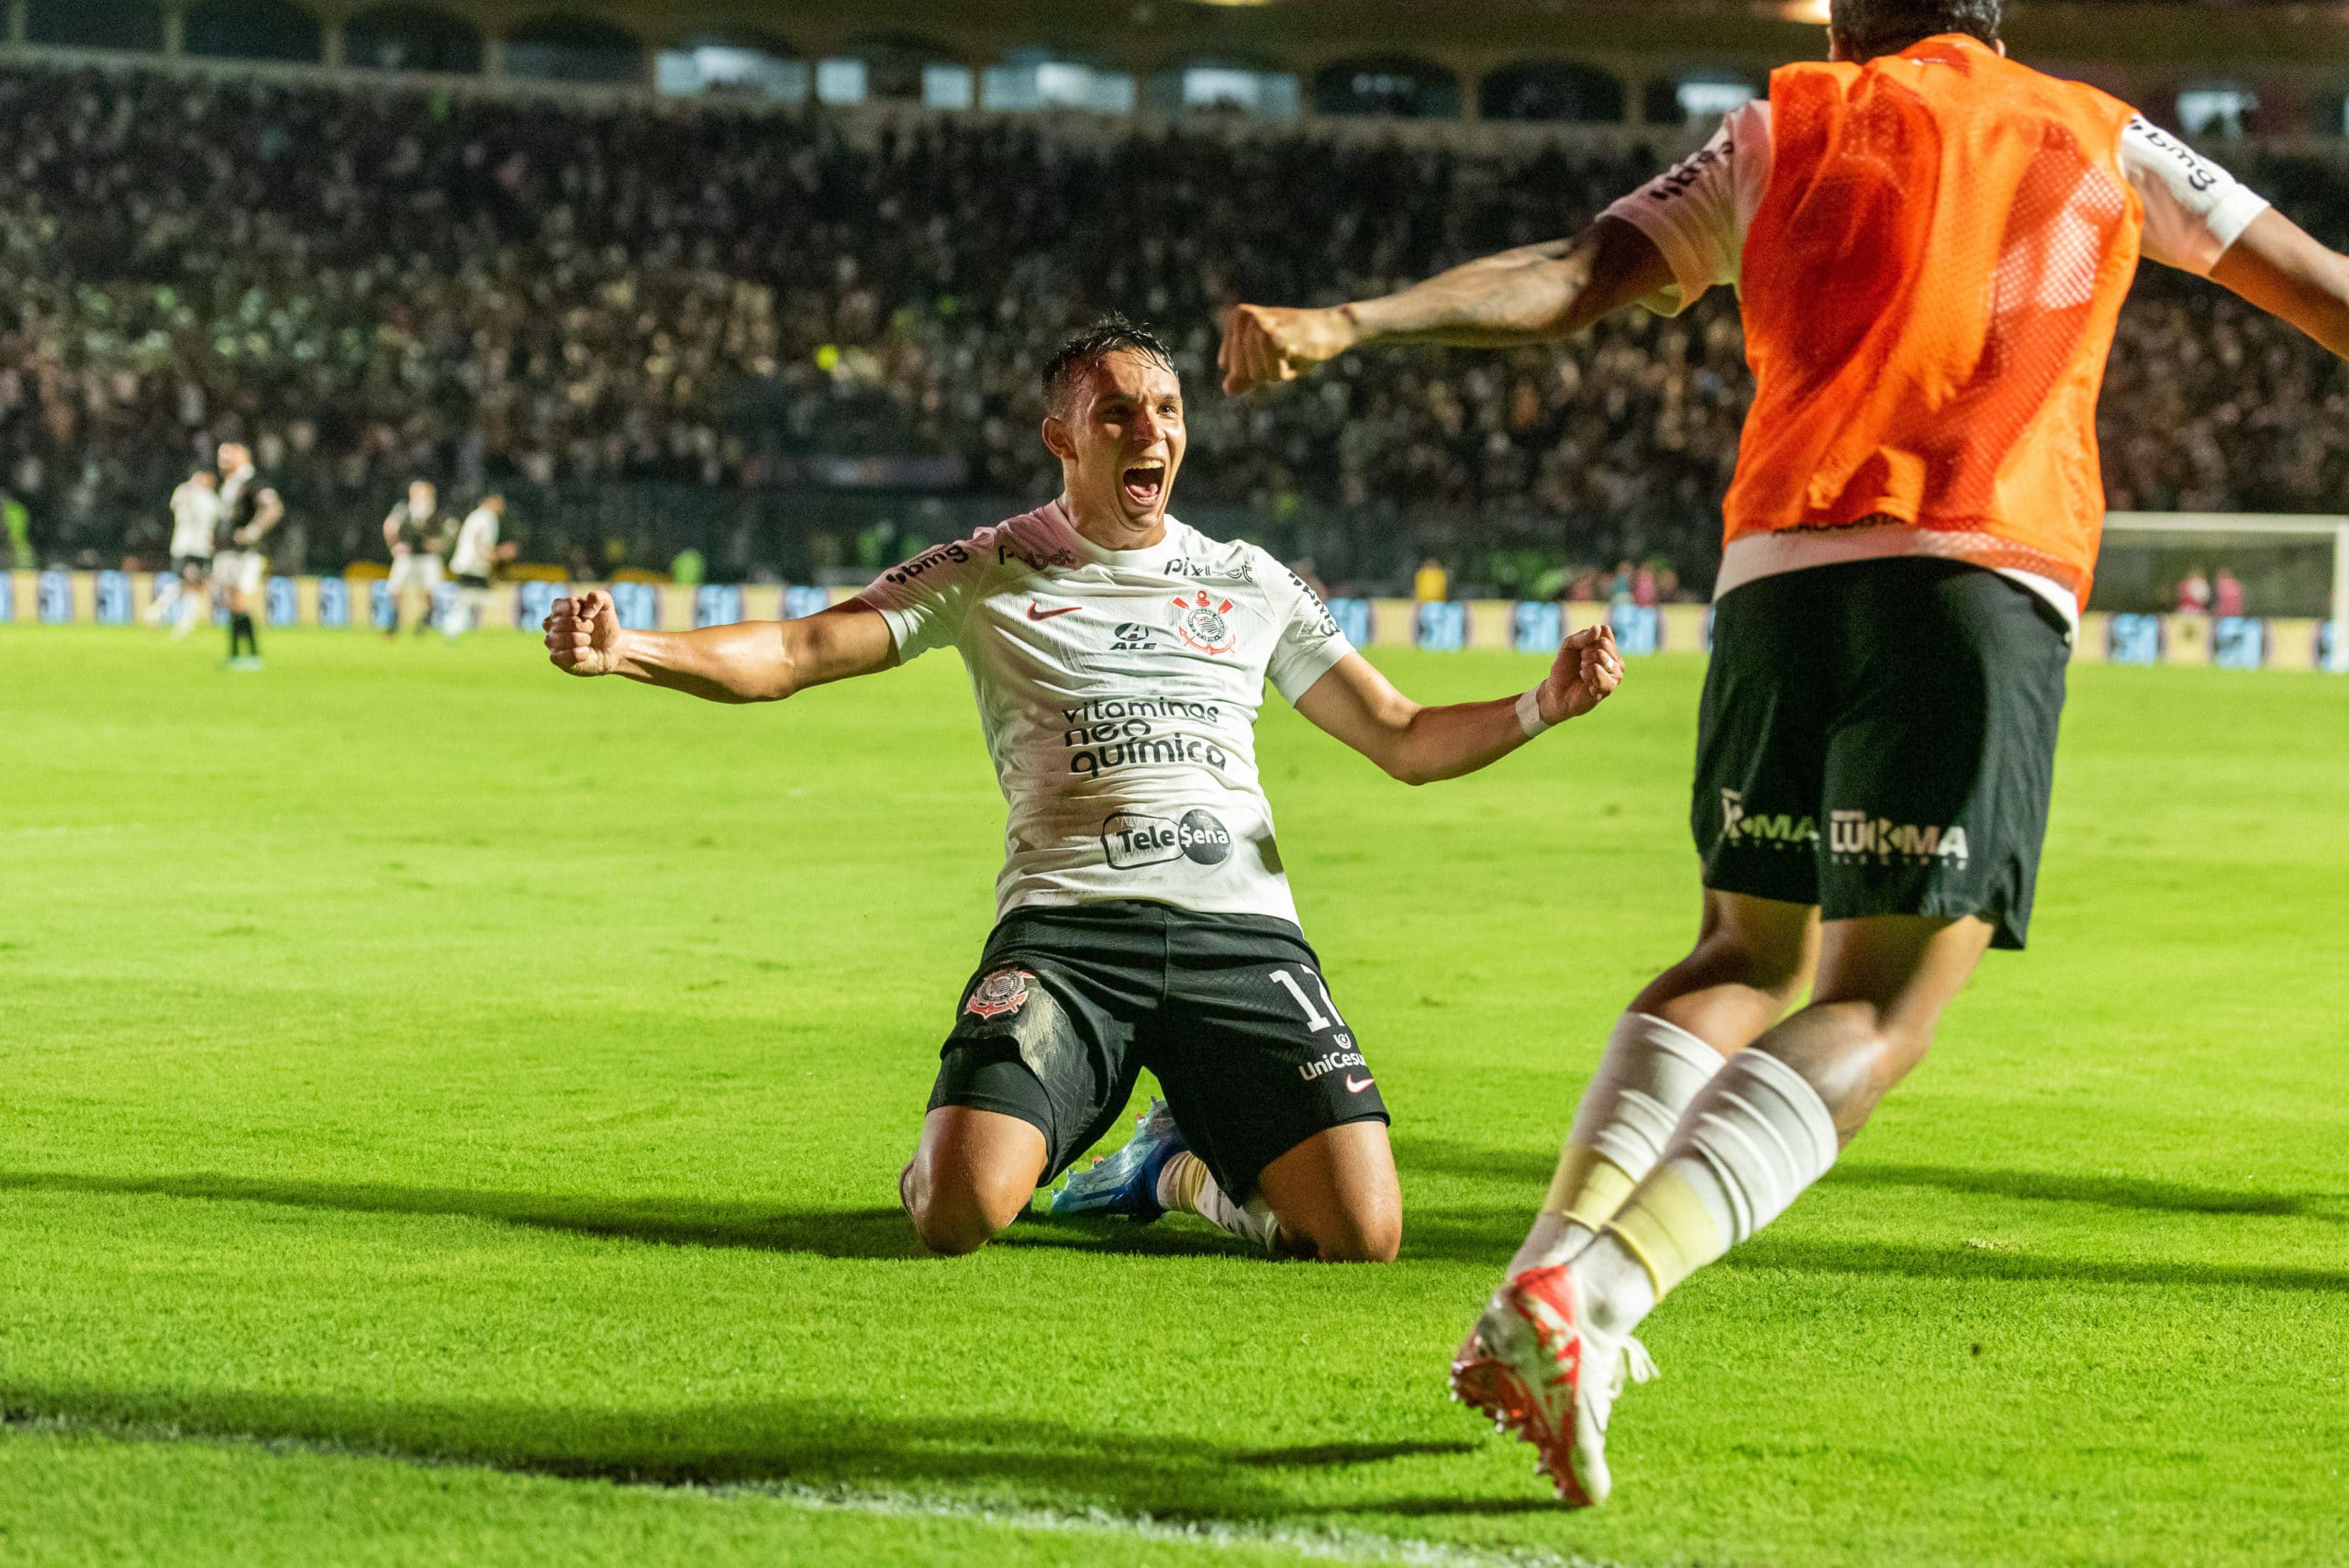 Giovane marcou o quarto gol do Corinthians no jogo